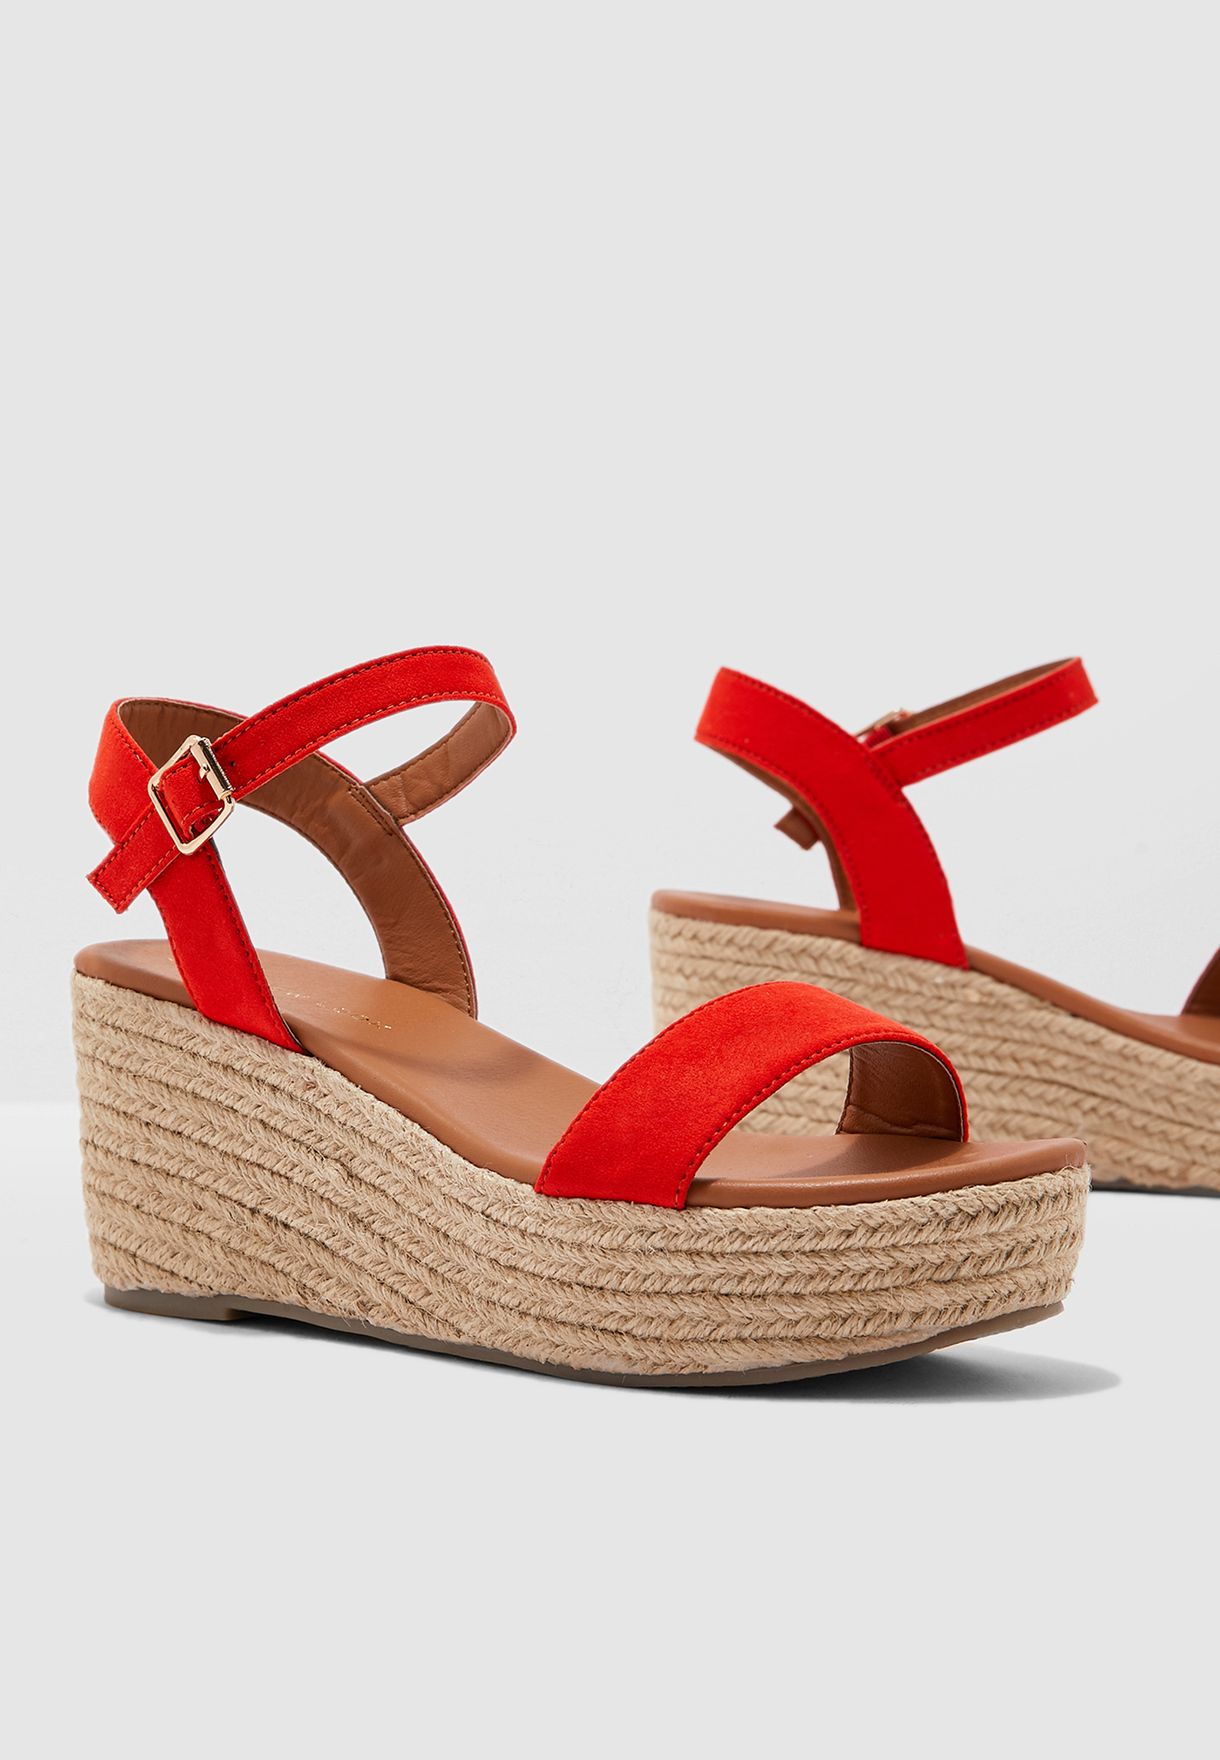 red sandal heels new look